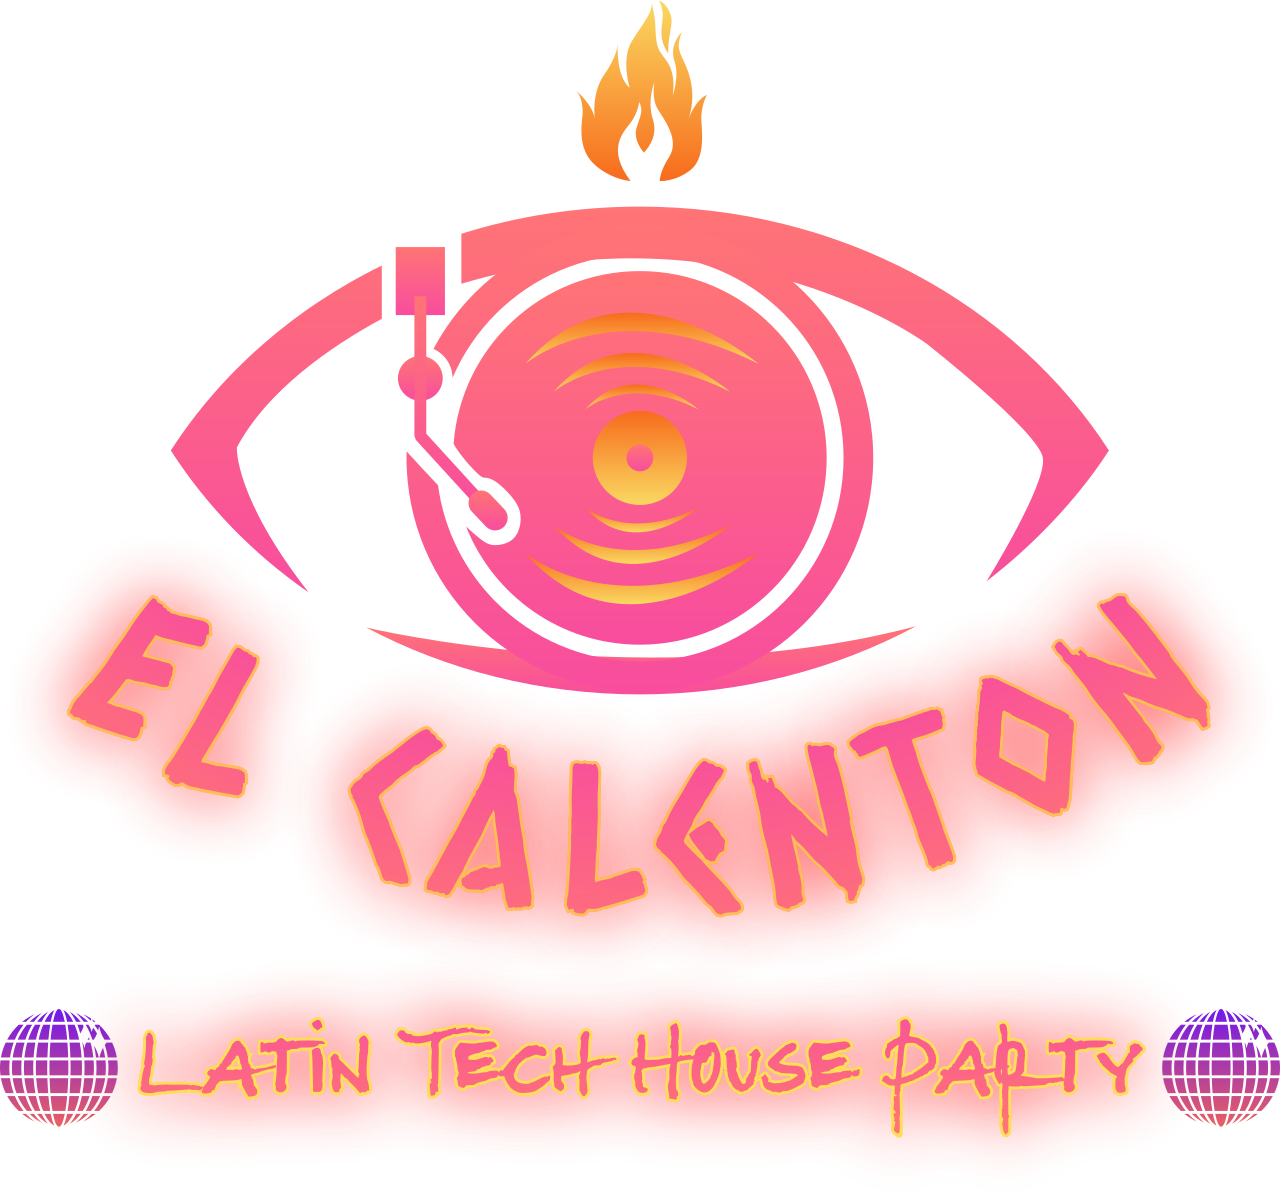 El Calenton Latin Tech House Party's web page